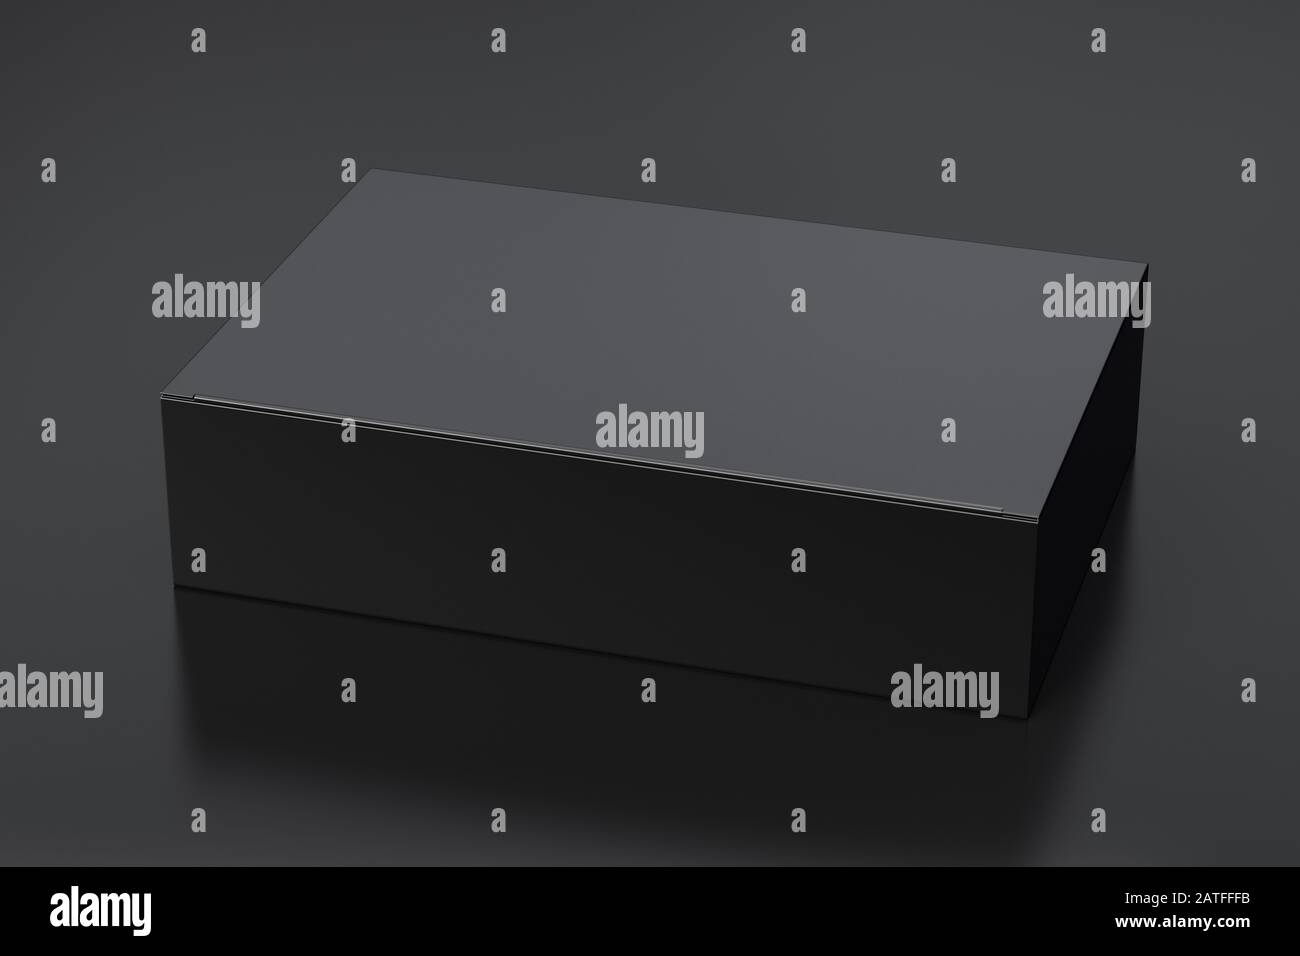 Boîte plate large noire vierge avec couvercle rabattable fermé sur fond noir. Chemin de détourage autour de la maquette de boîte Banque D'Images